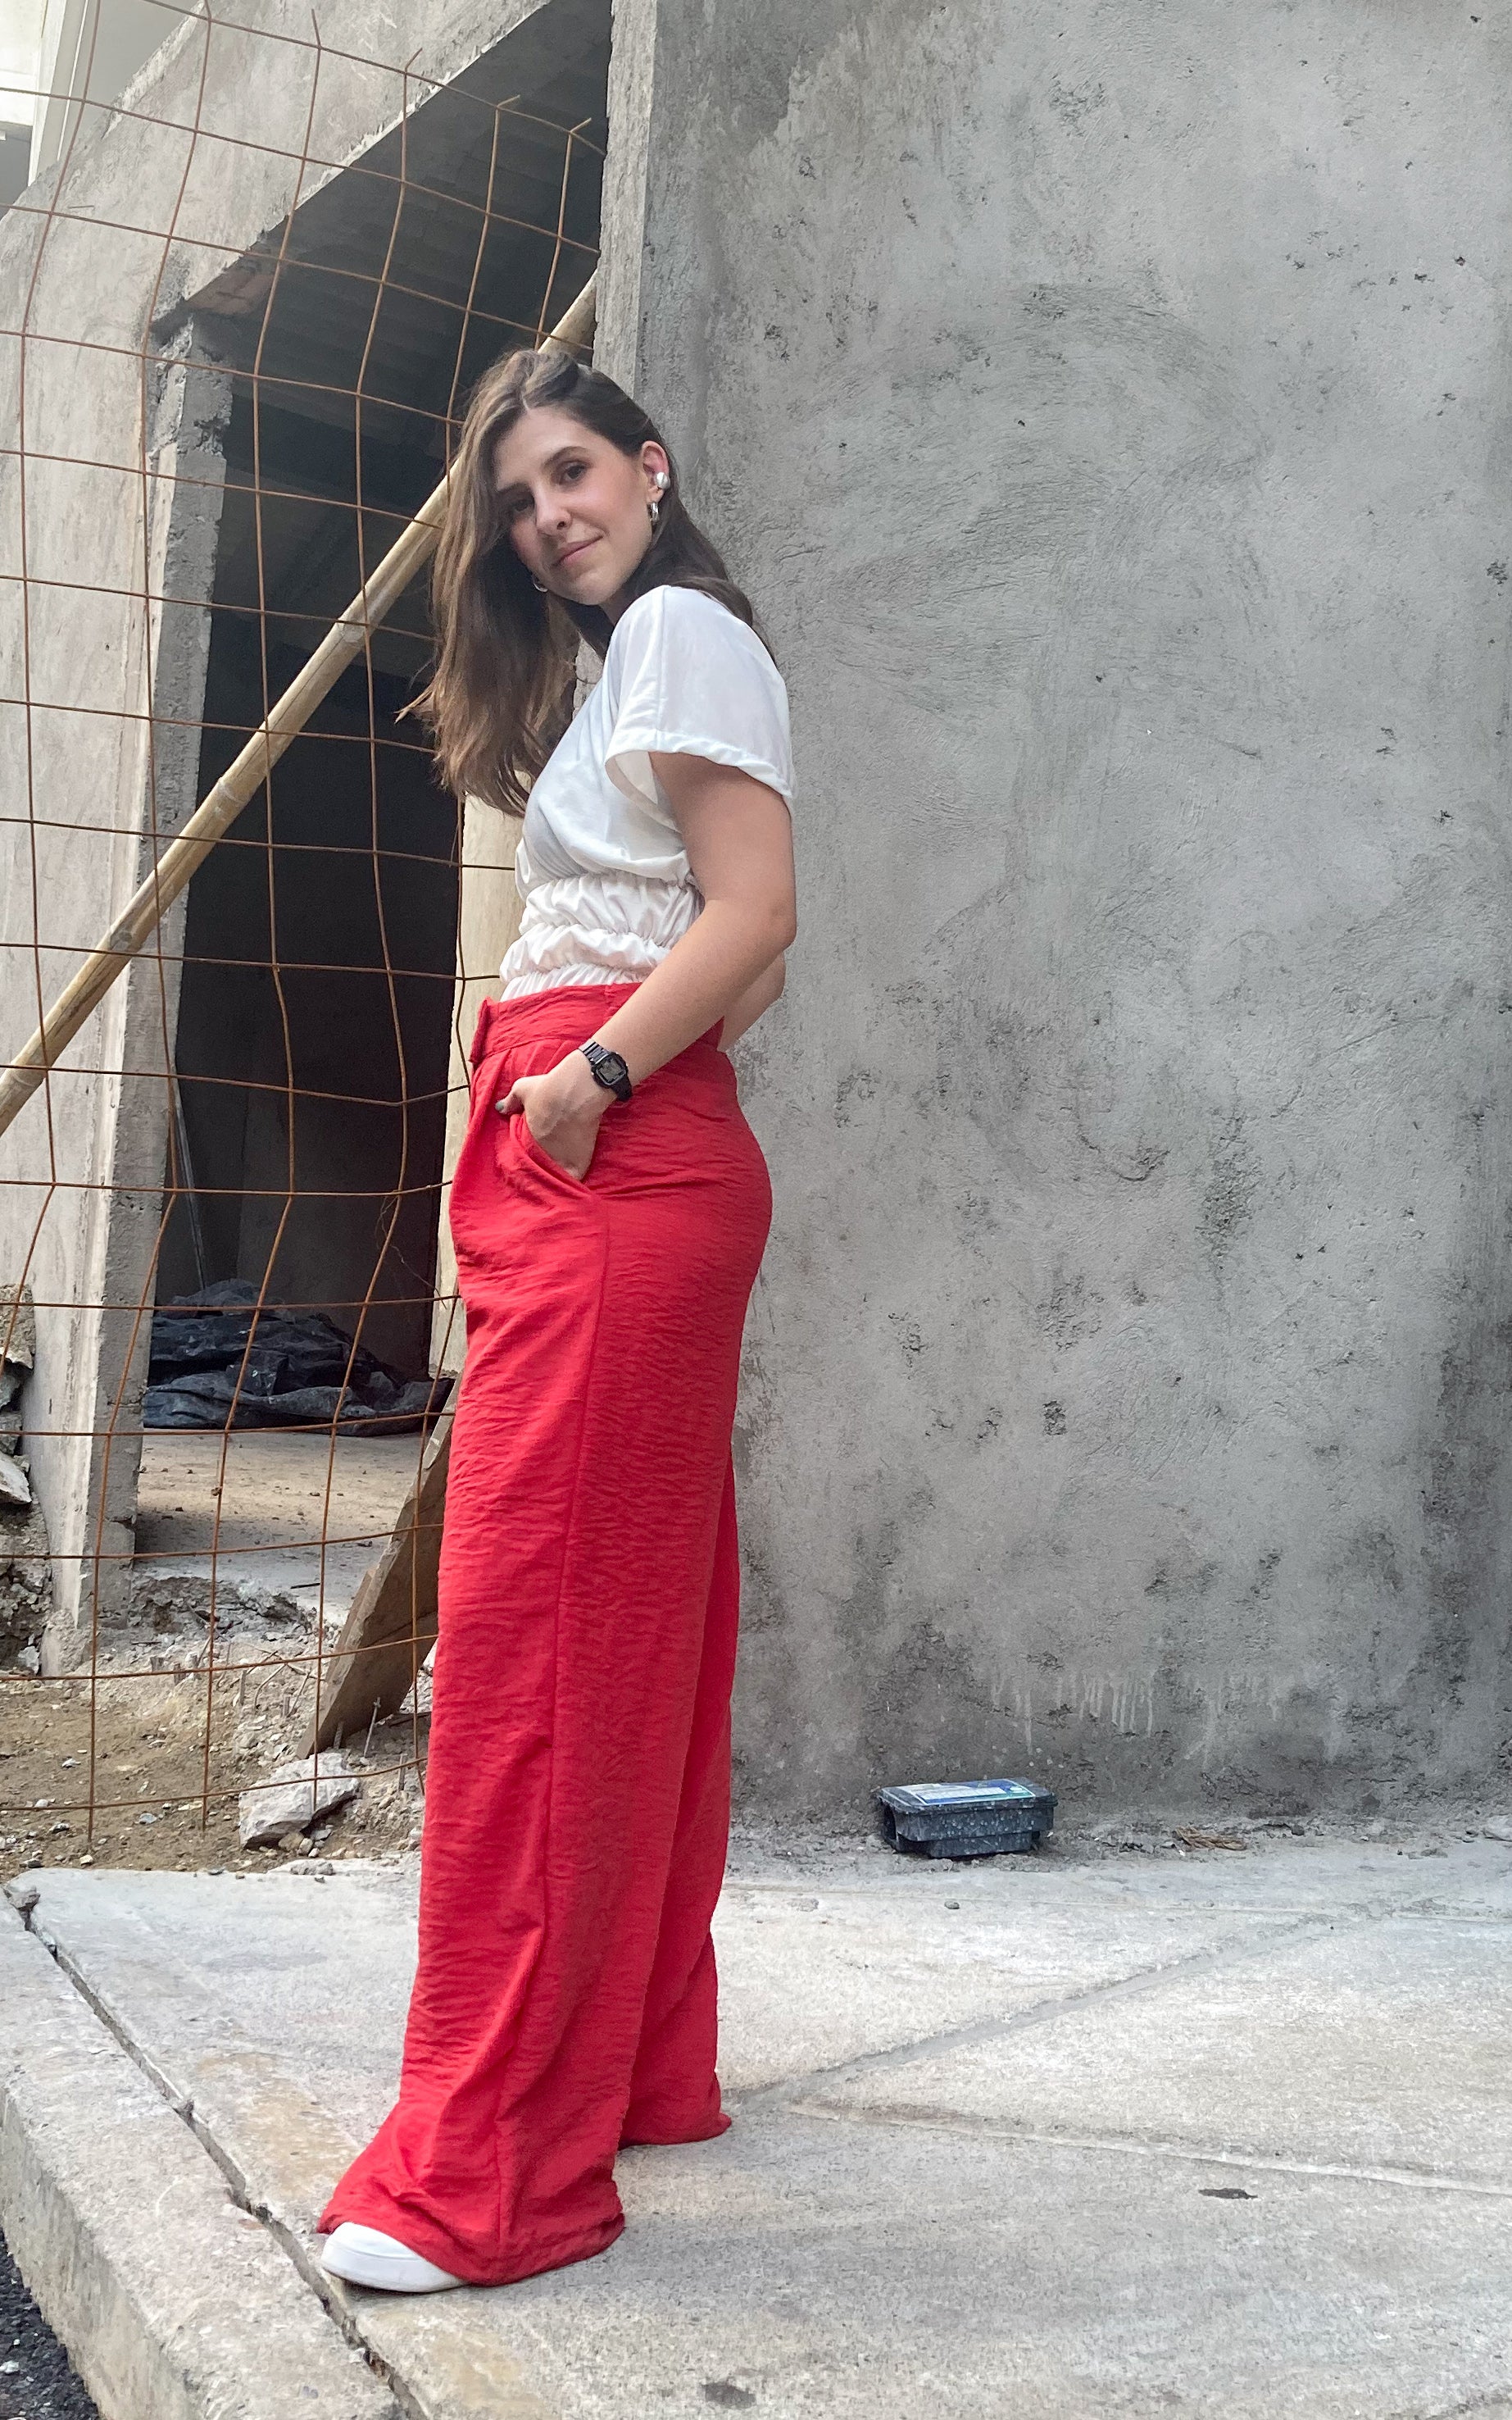 Pantalón bota ancha estilo palazzo de color rojo, 100% colombianos.